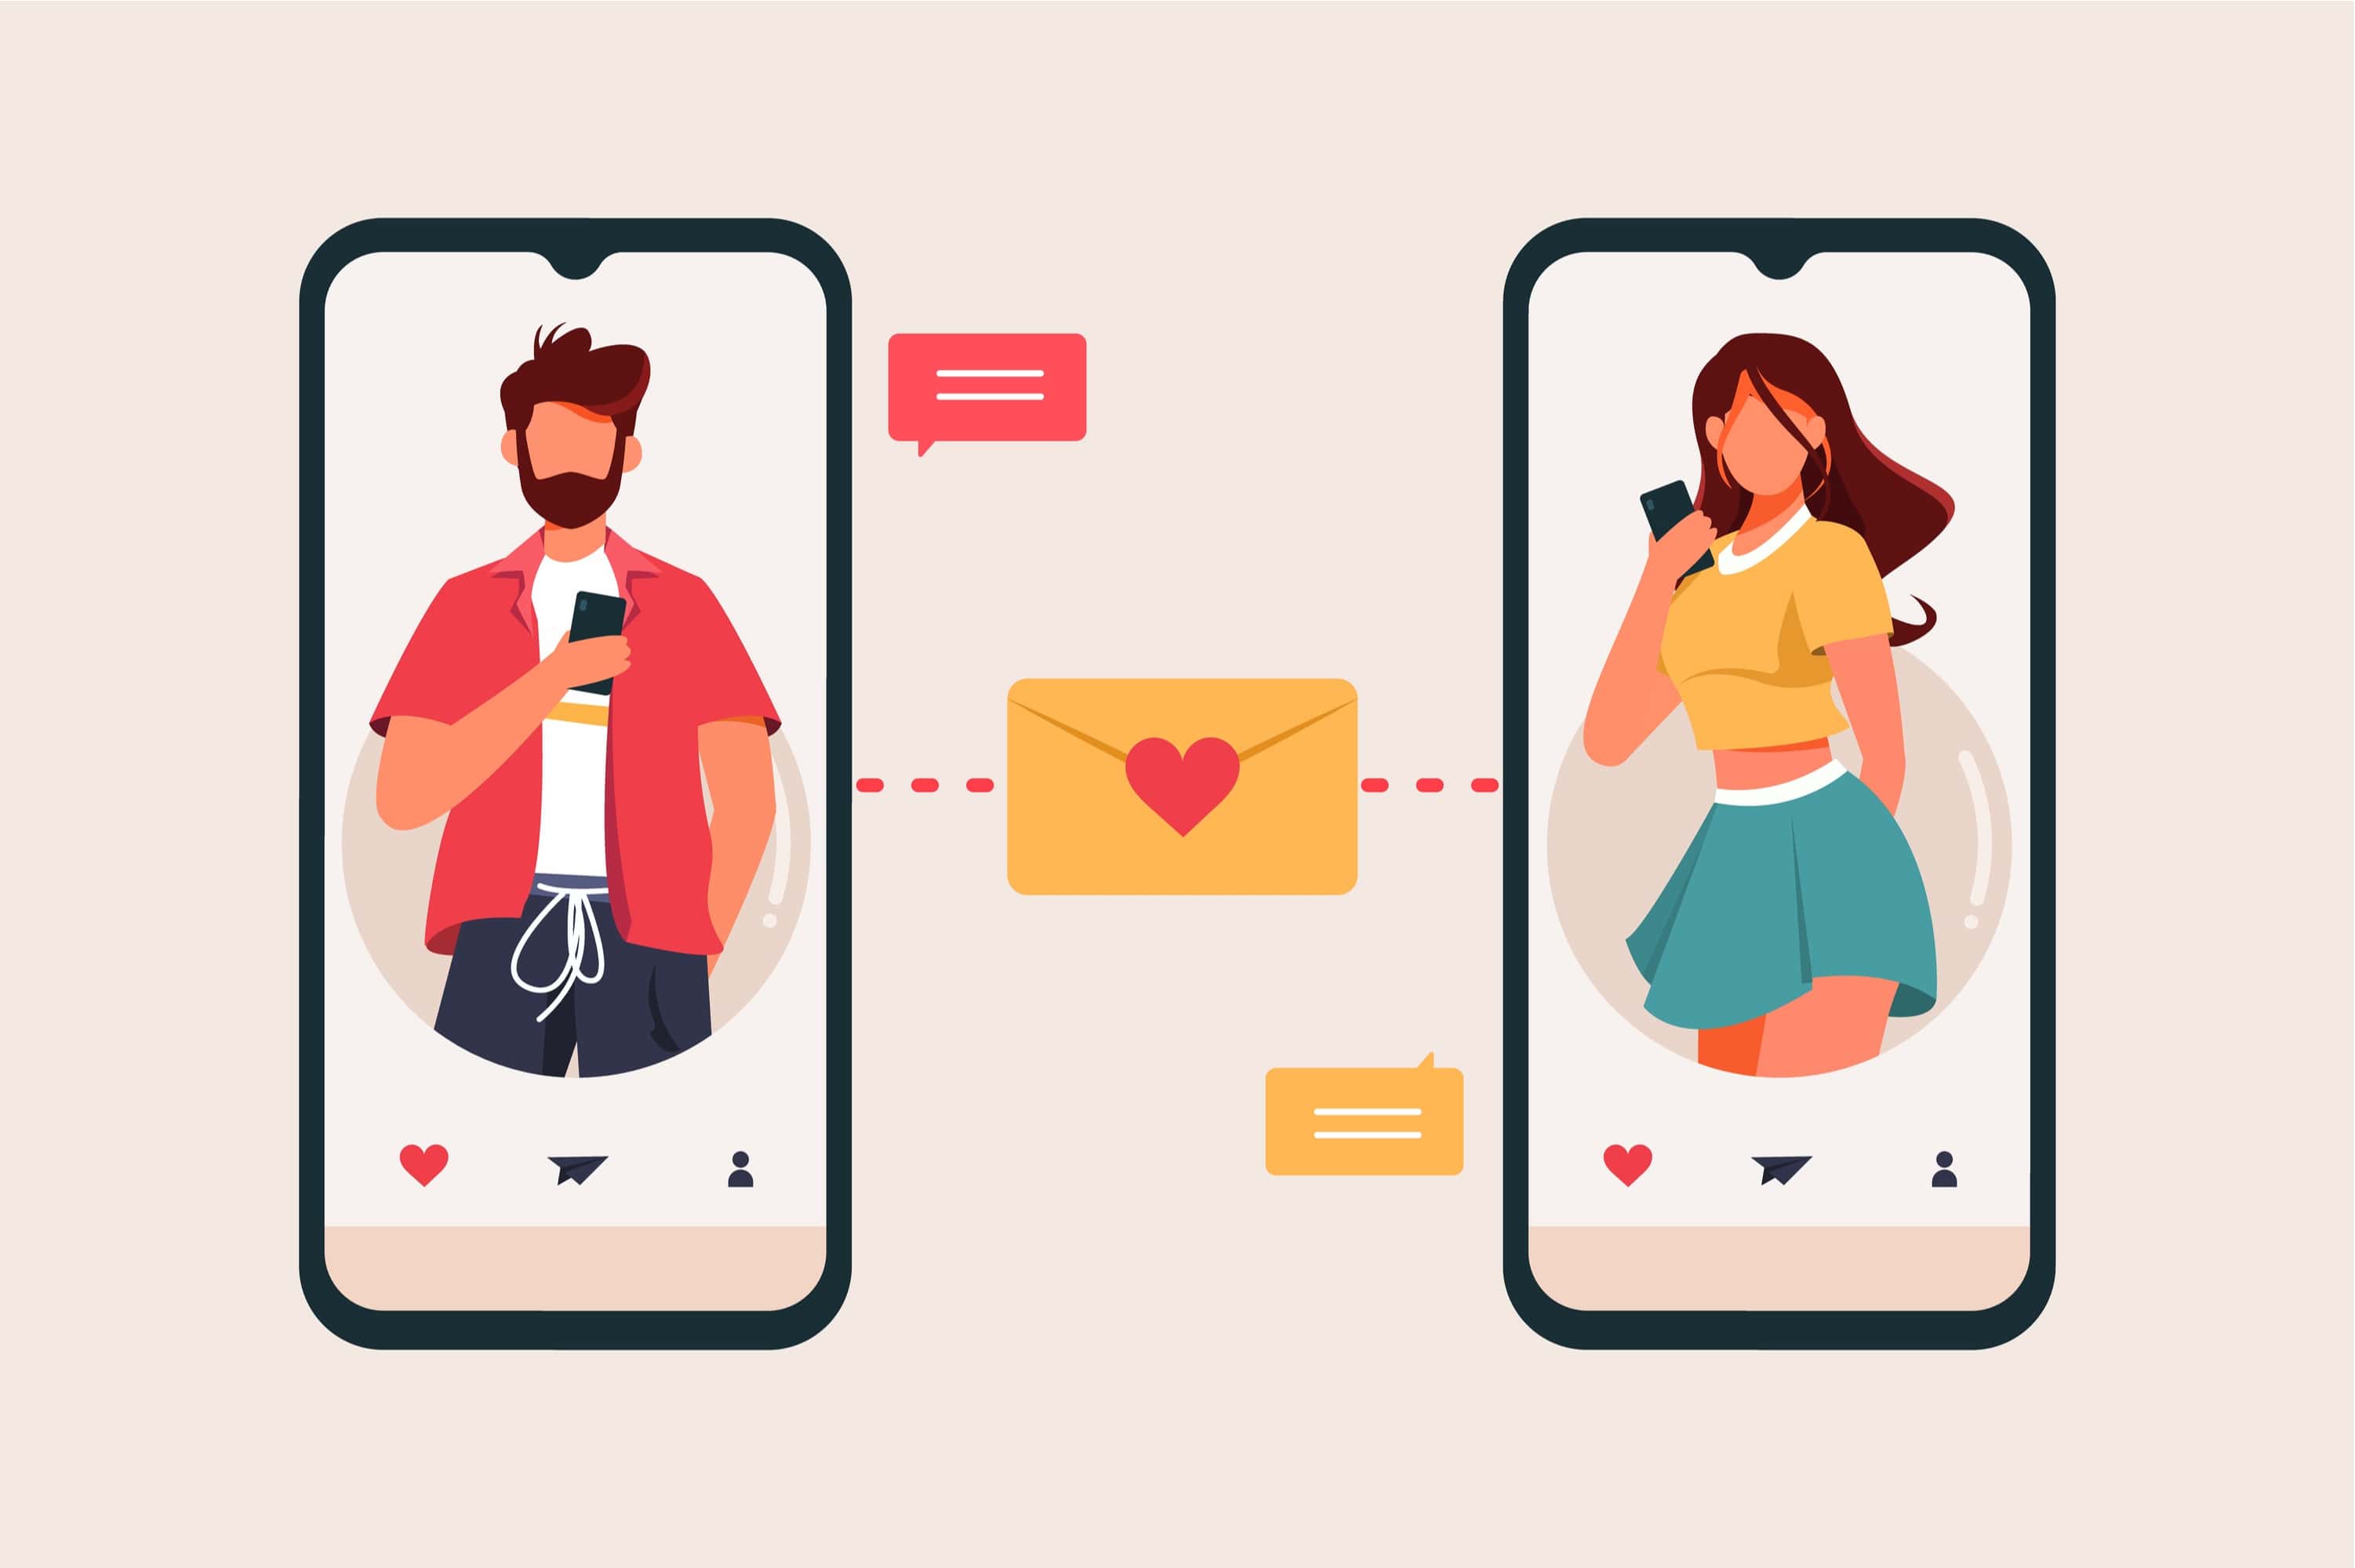 vimeo dating app datând felul în care dumnezeu intenționat